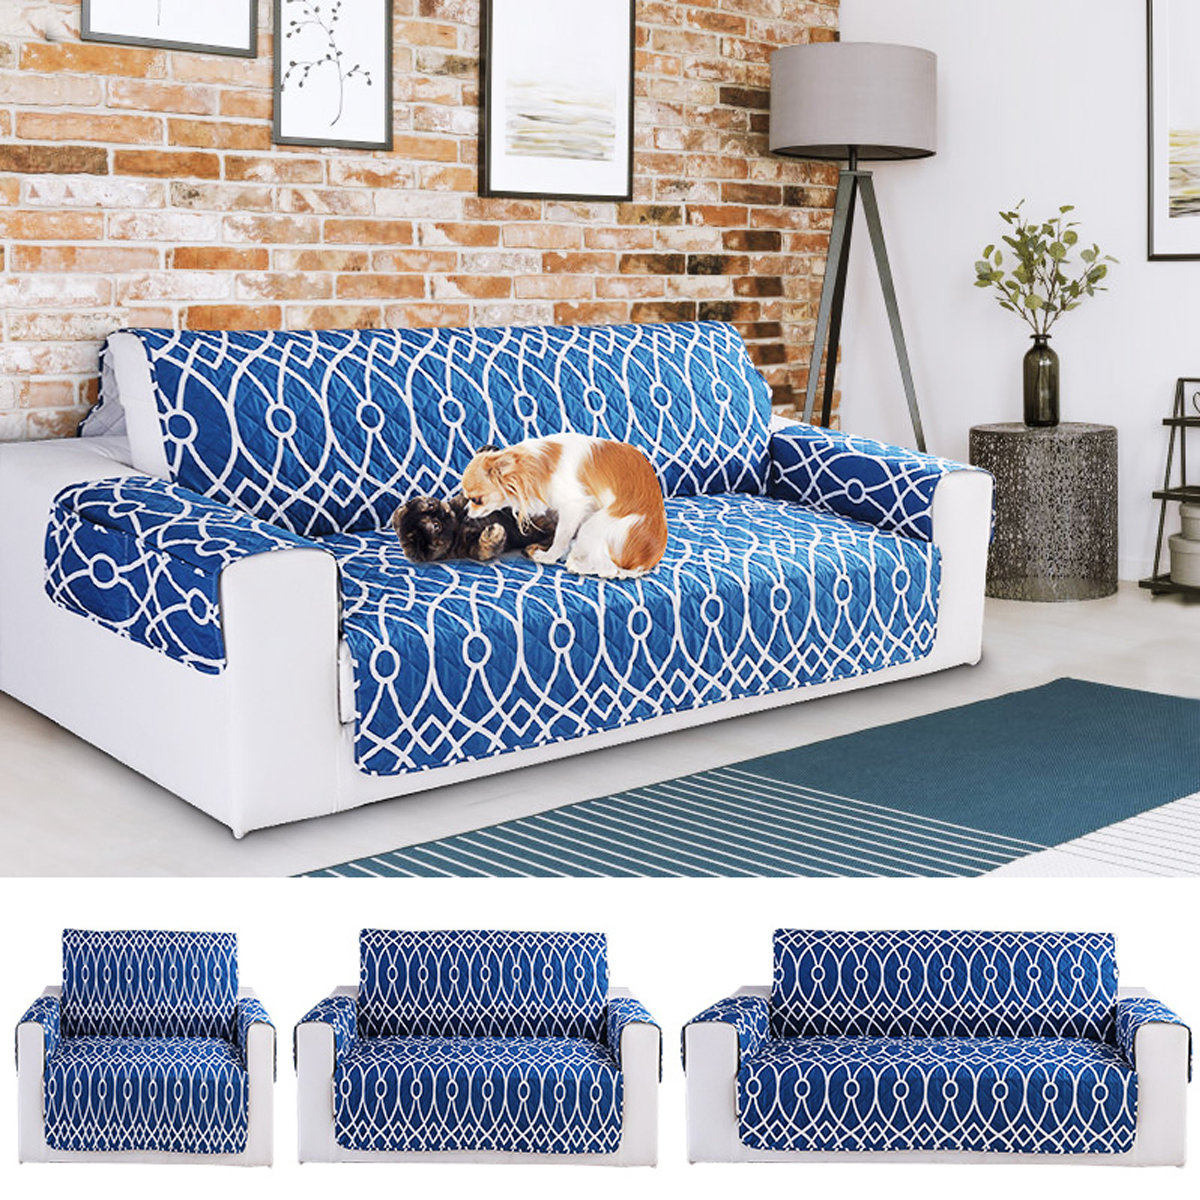 Stuoia del sofà del gatto del cane della stuoia del protettore della mobilia della stuoia del sofà della mobilia dell'animale domestico del modello di fiore di 3 punti